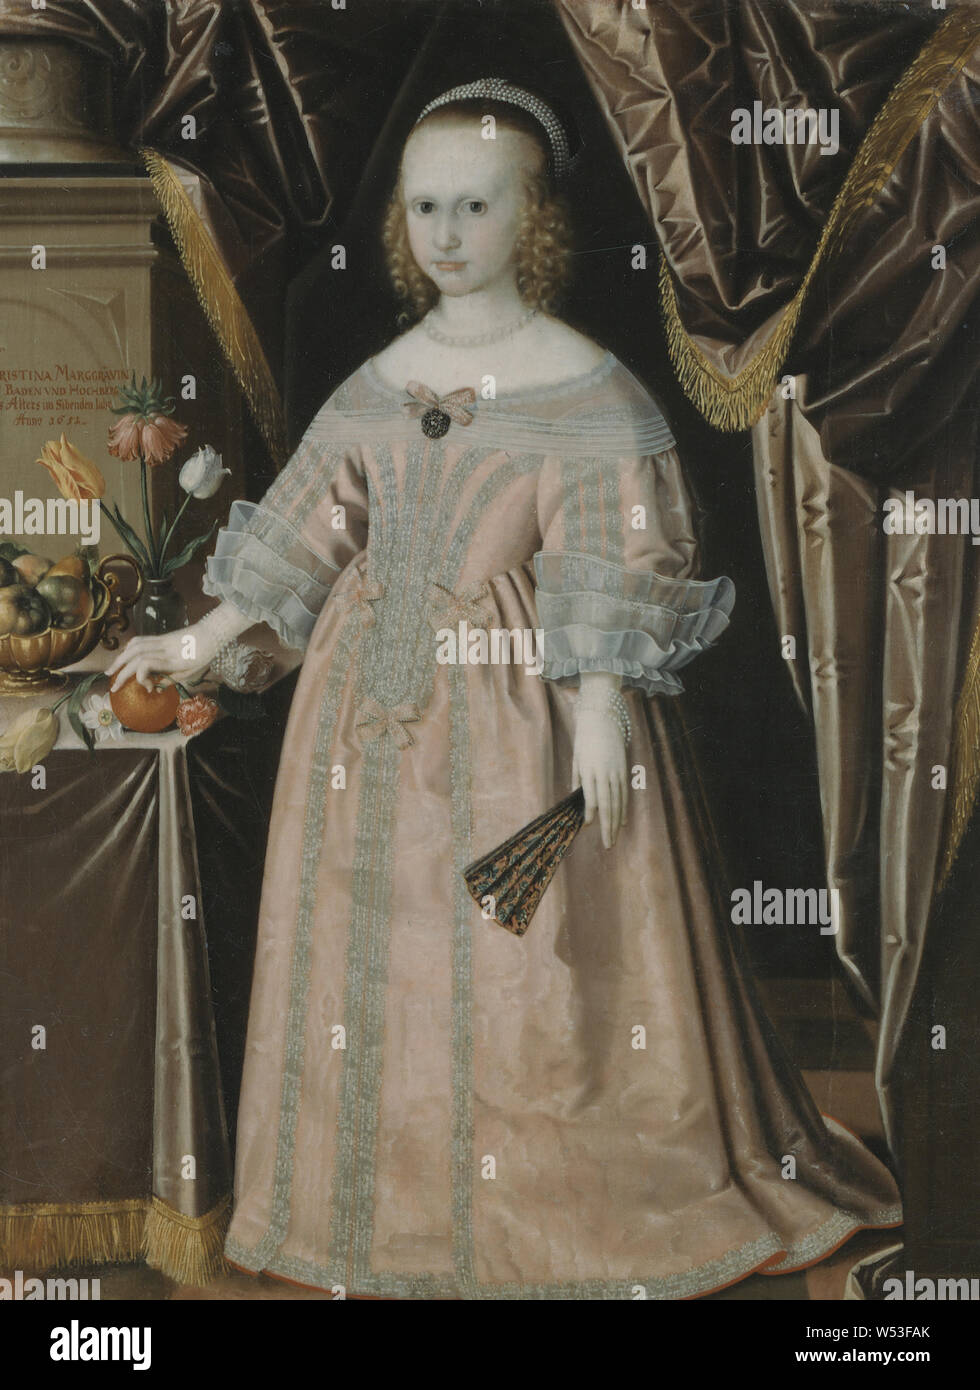 Prinzessin Kristina, Kristina, 1645-1705, Prinzessin von Baden-Durlach, Herzogin von Saxony-Gotha, Malerei, Portrait, 1651, Öl auf Leinwand, Höhe 129 cm (50,7 Zoll), Breite 102 cm (40,1 Zoll) Stockfoto